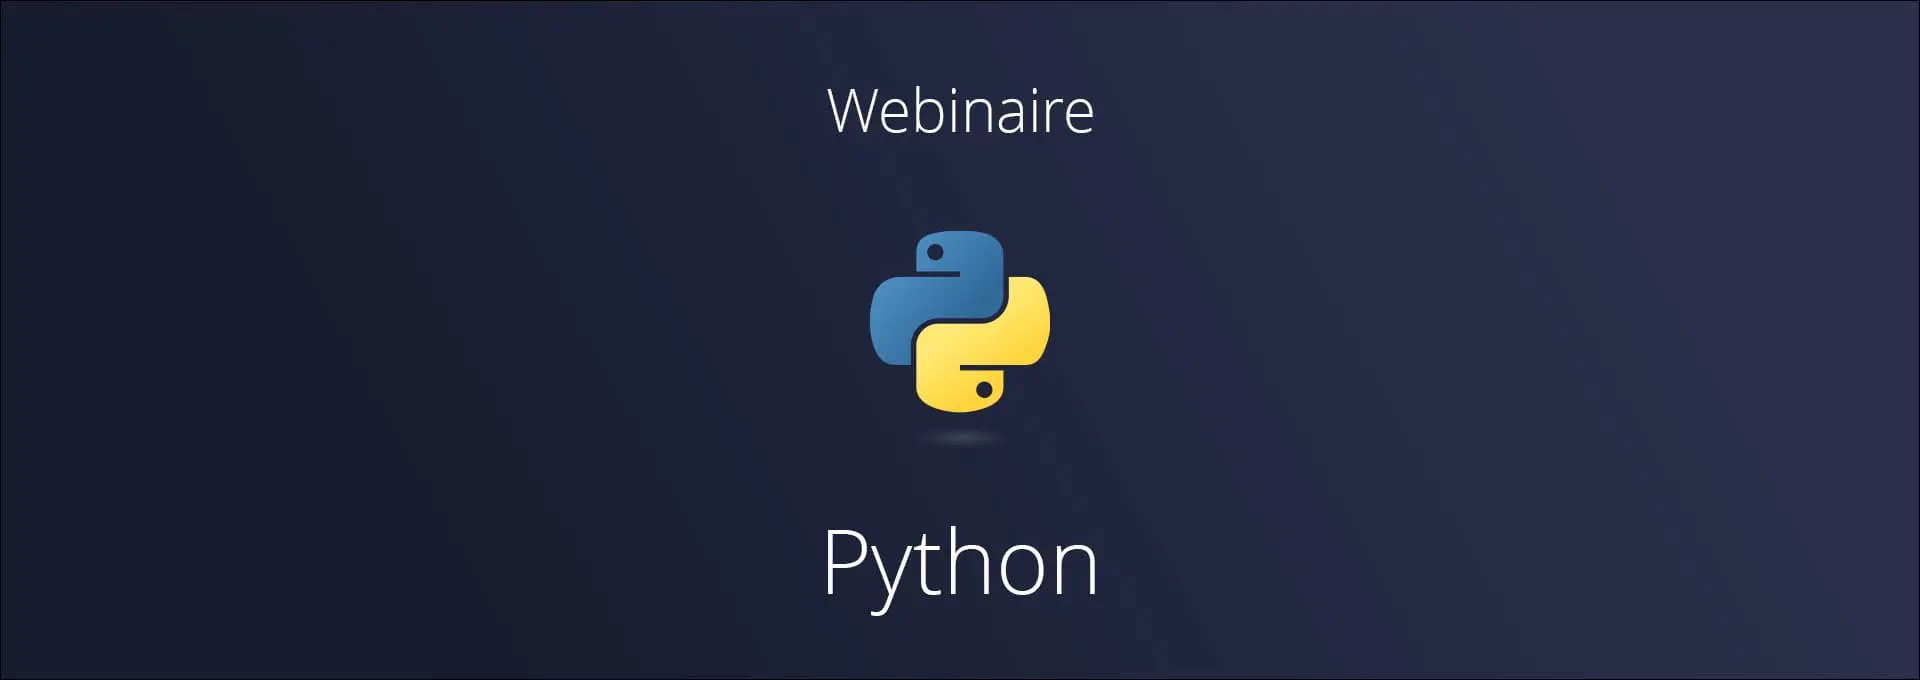 Actualités Webinaires - Python